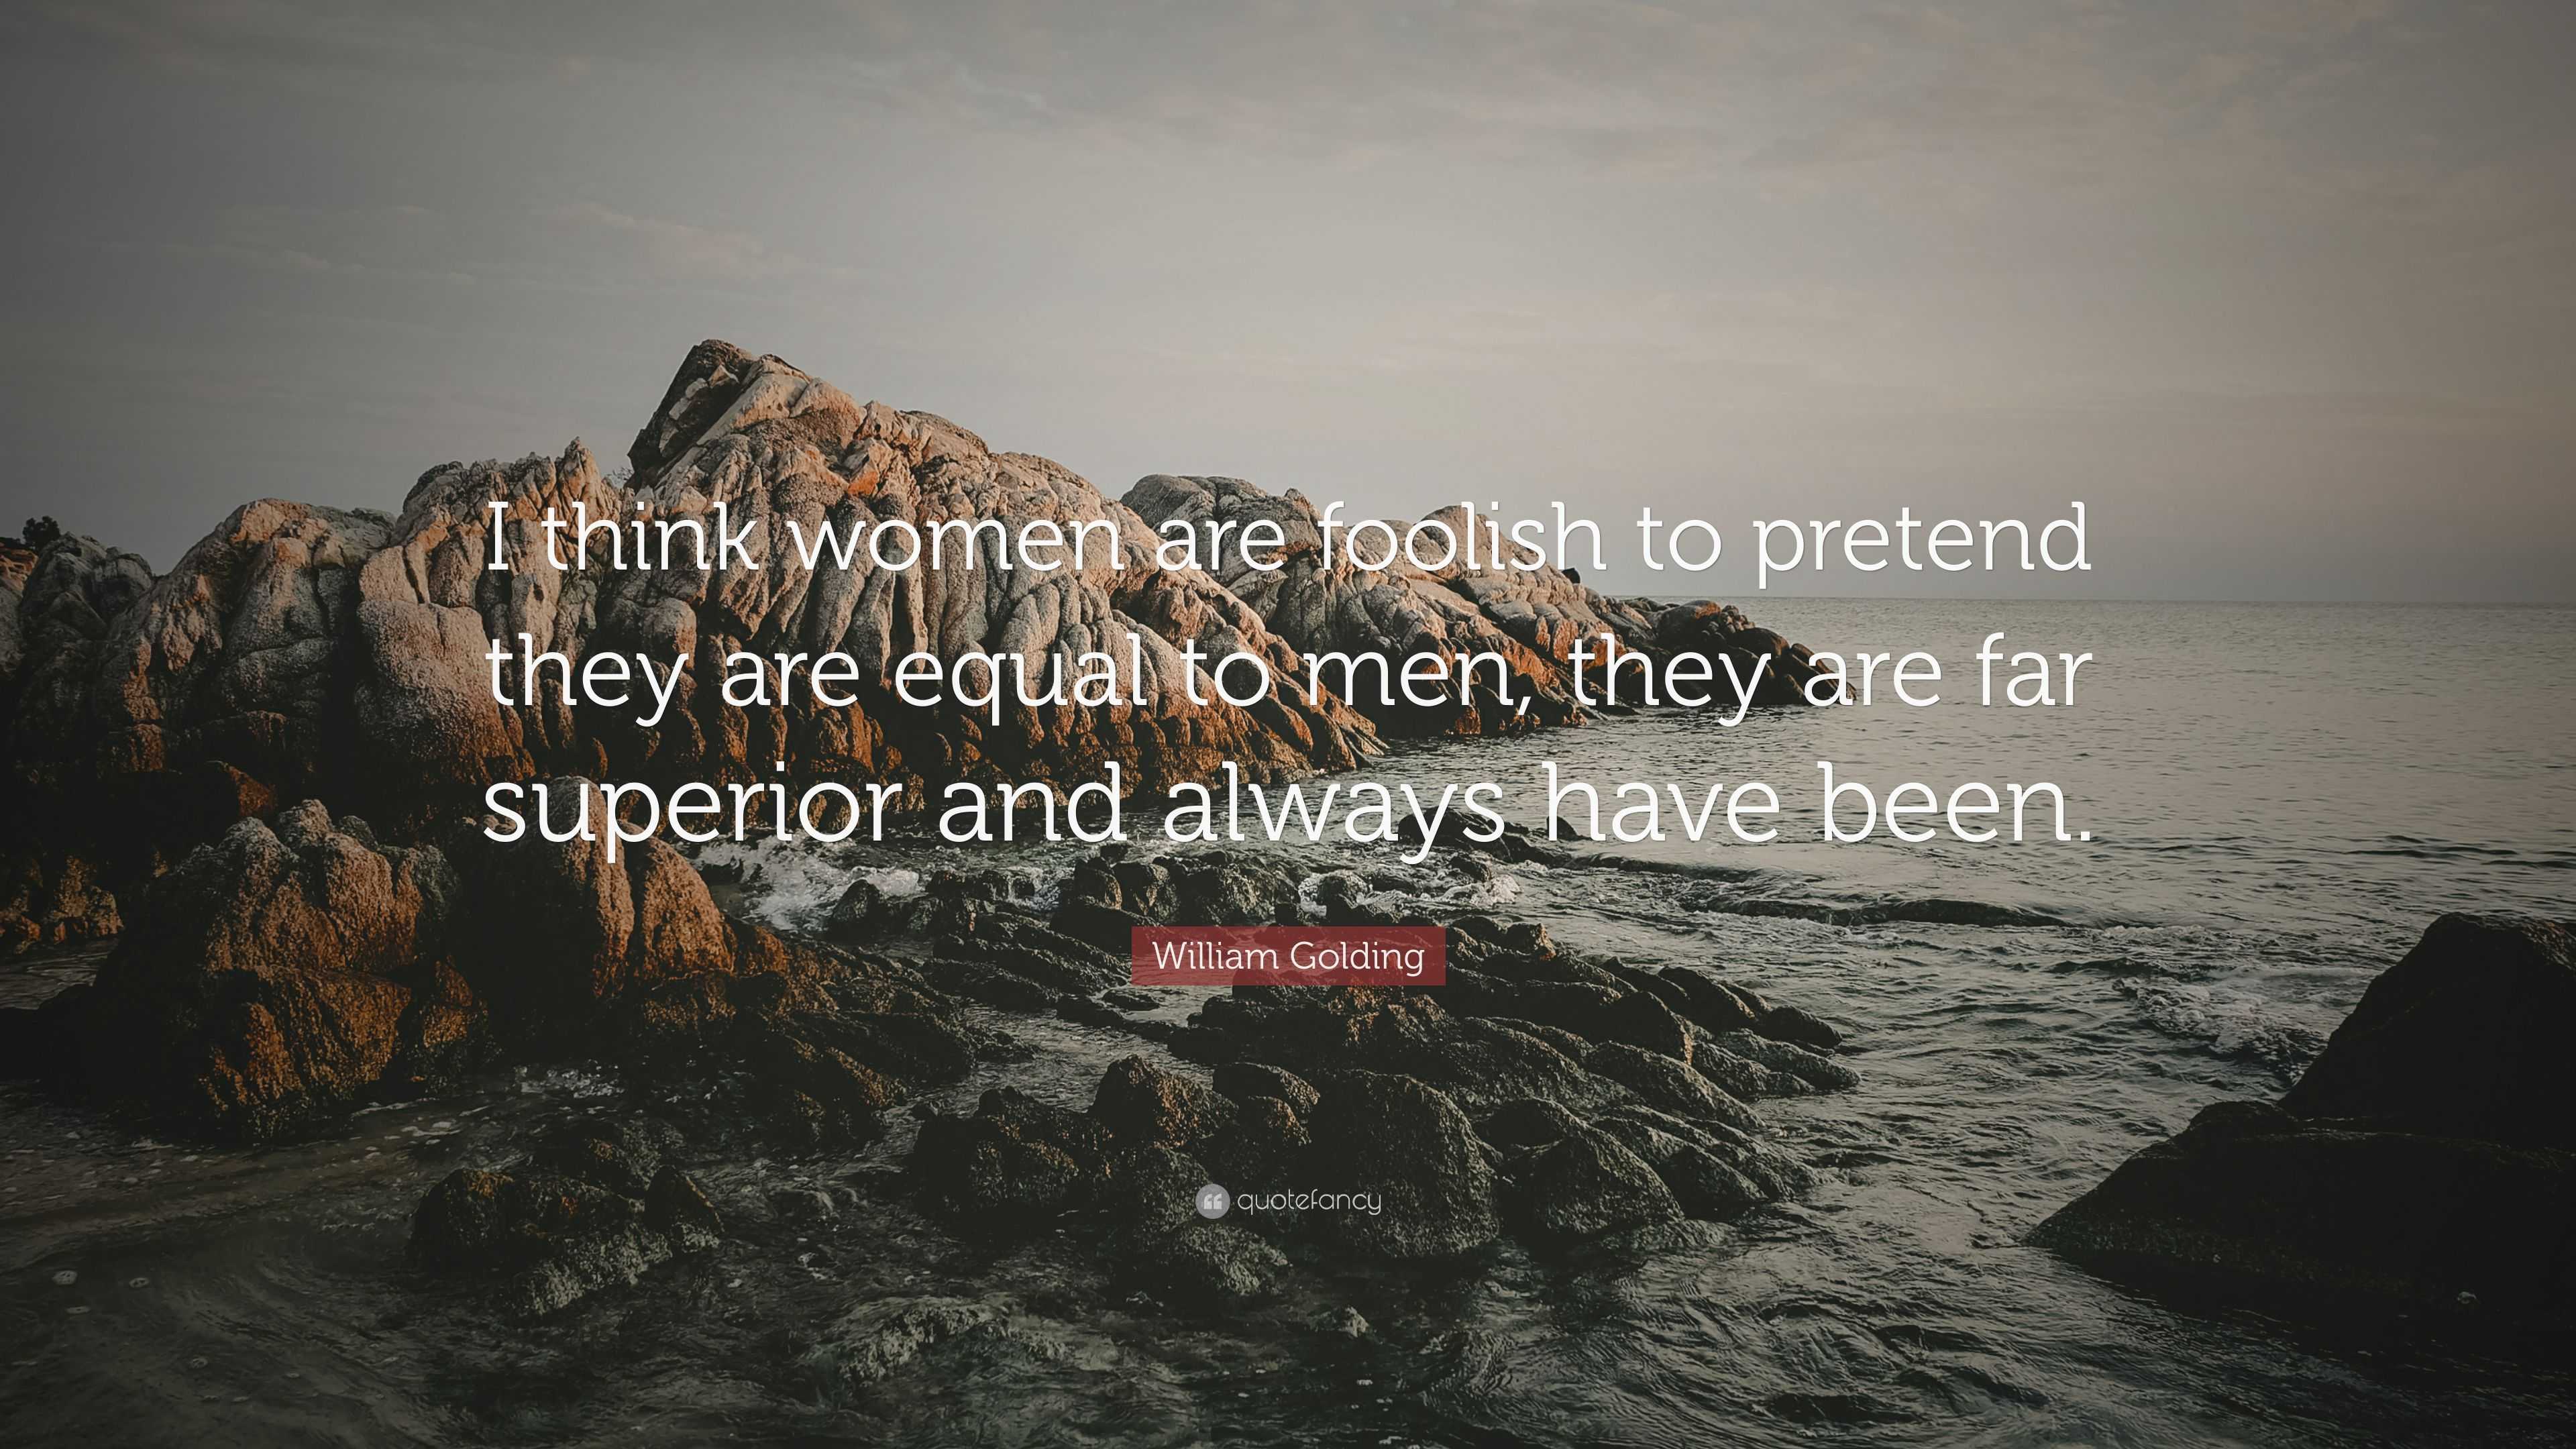 Golding quote women william on William Golding